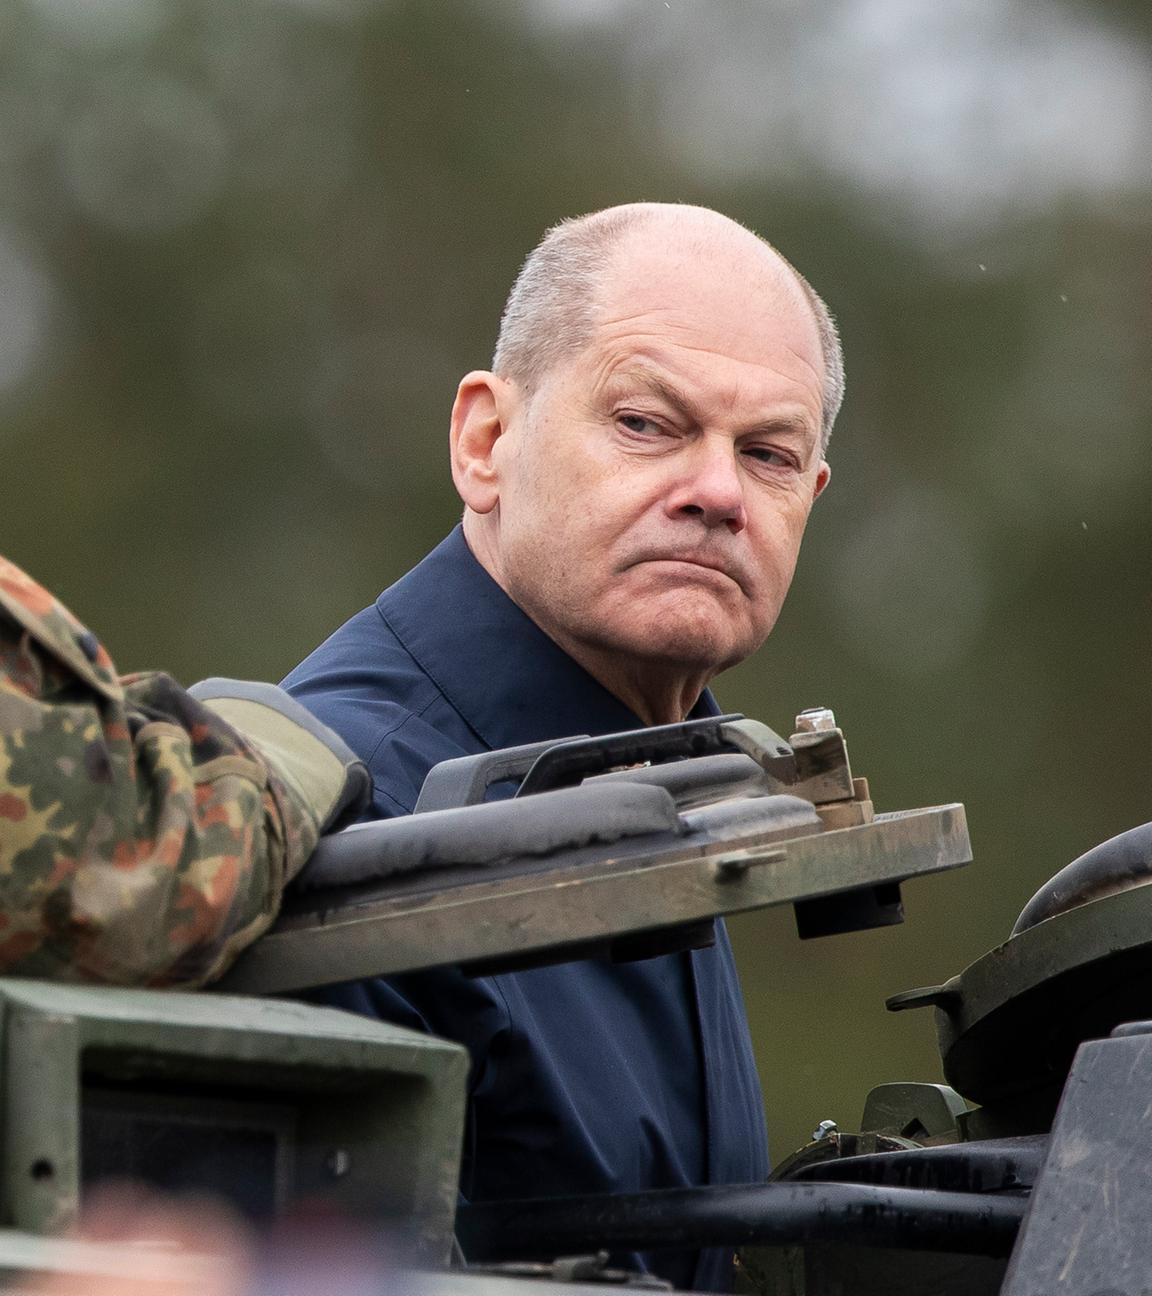 Litauen, Vilnius: Bundeskanzler Olaf Scholz (SPD) fährt auf einem gepanzerten Militärfahrzeug während der litauisch-deutschen Militärübung "Grand Quadriga" auf einem Truppenübungsplatz in Pabrade.